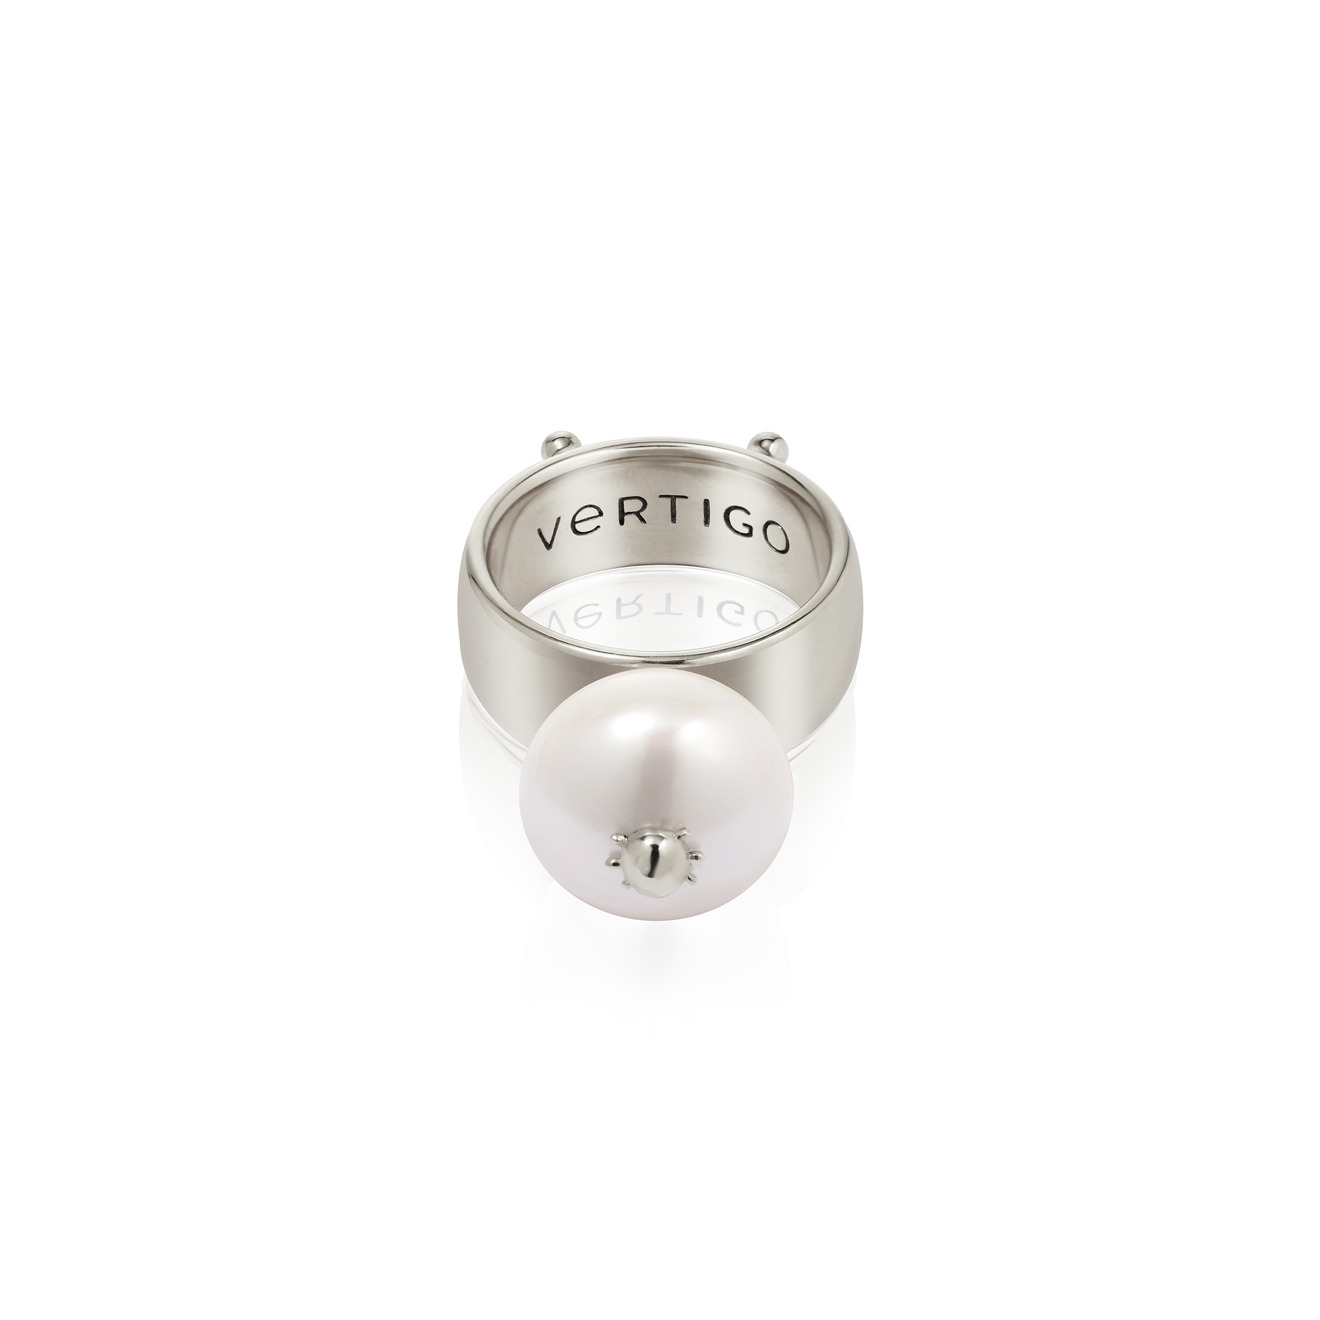 Vertigo Jewellery Lab Кольцо СLEOPTR LADYBUG RING из серебра с речным жемчугом vertigo jewellery lab фаланговое кольцо из серебра essentials покрытое розовым золотом